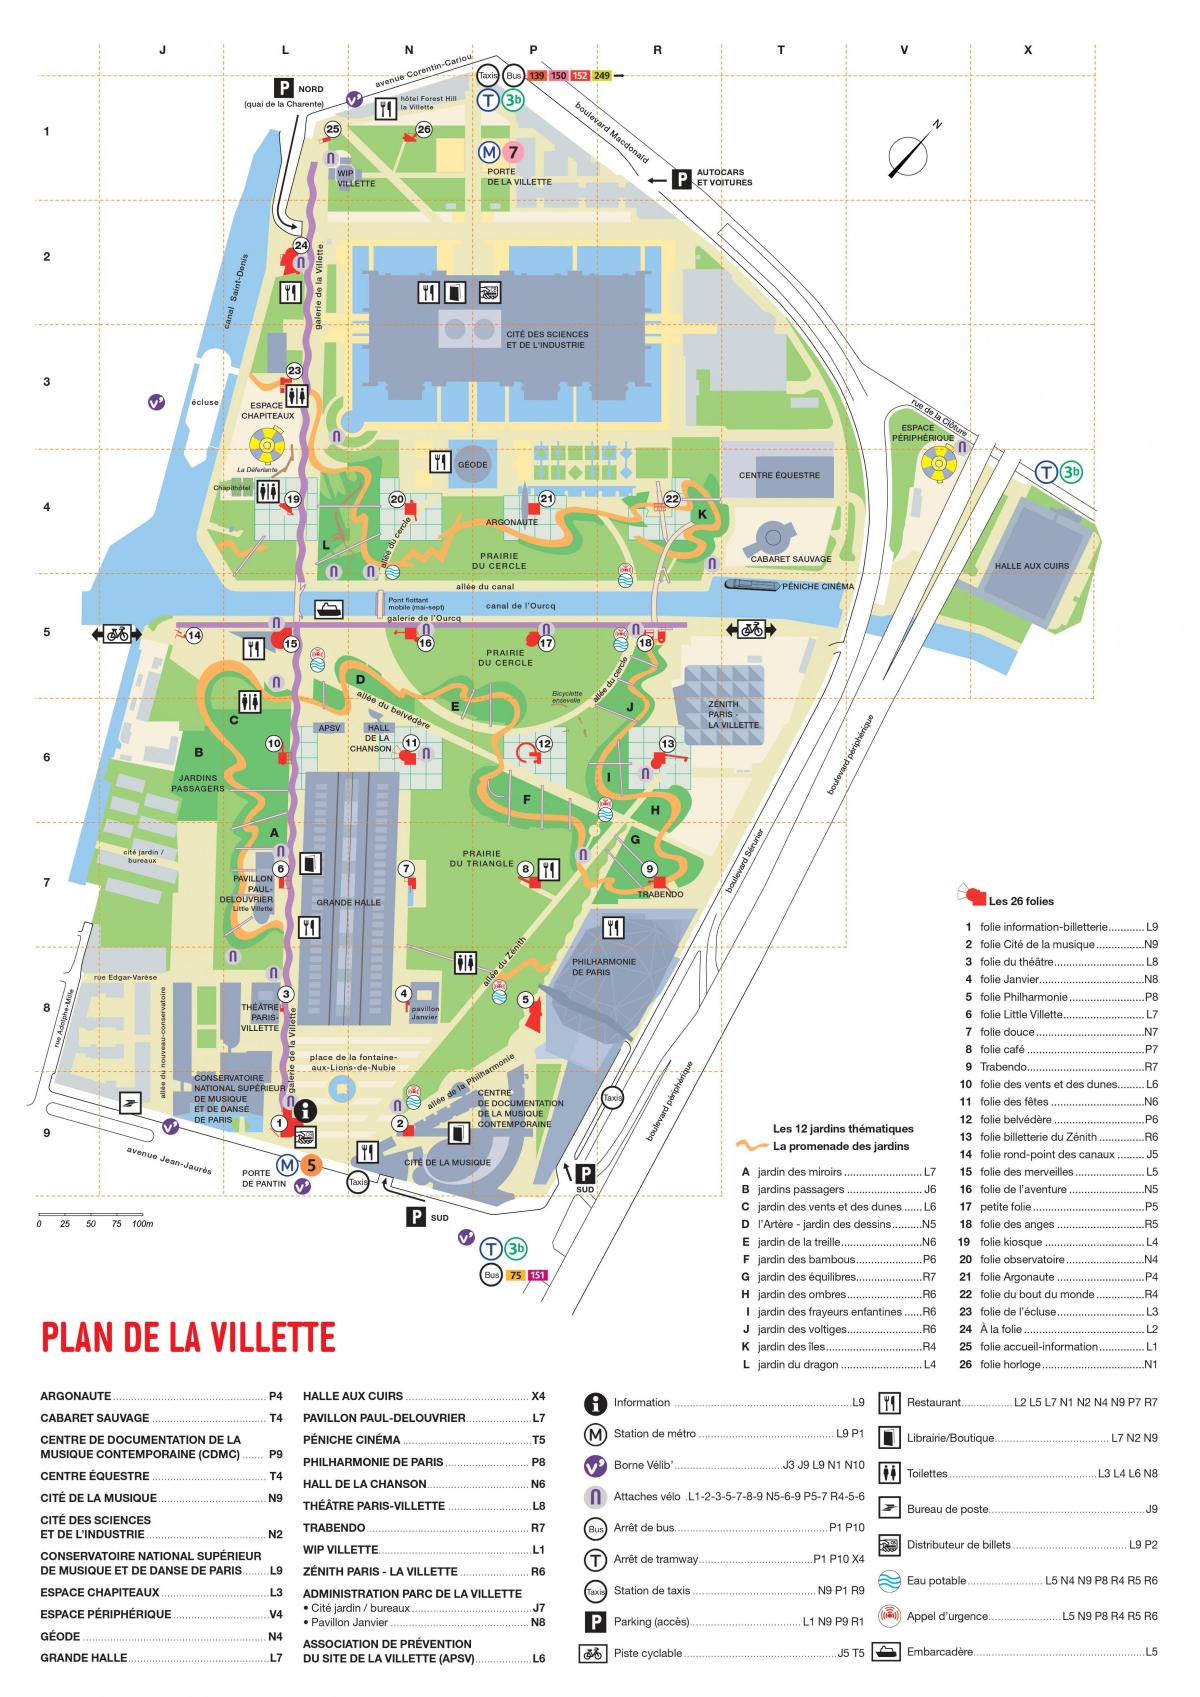 Kort over Parc de la Villette